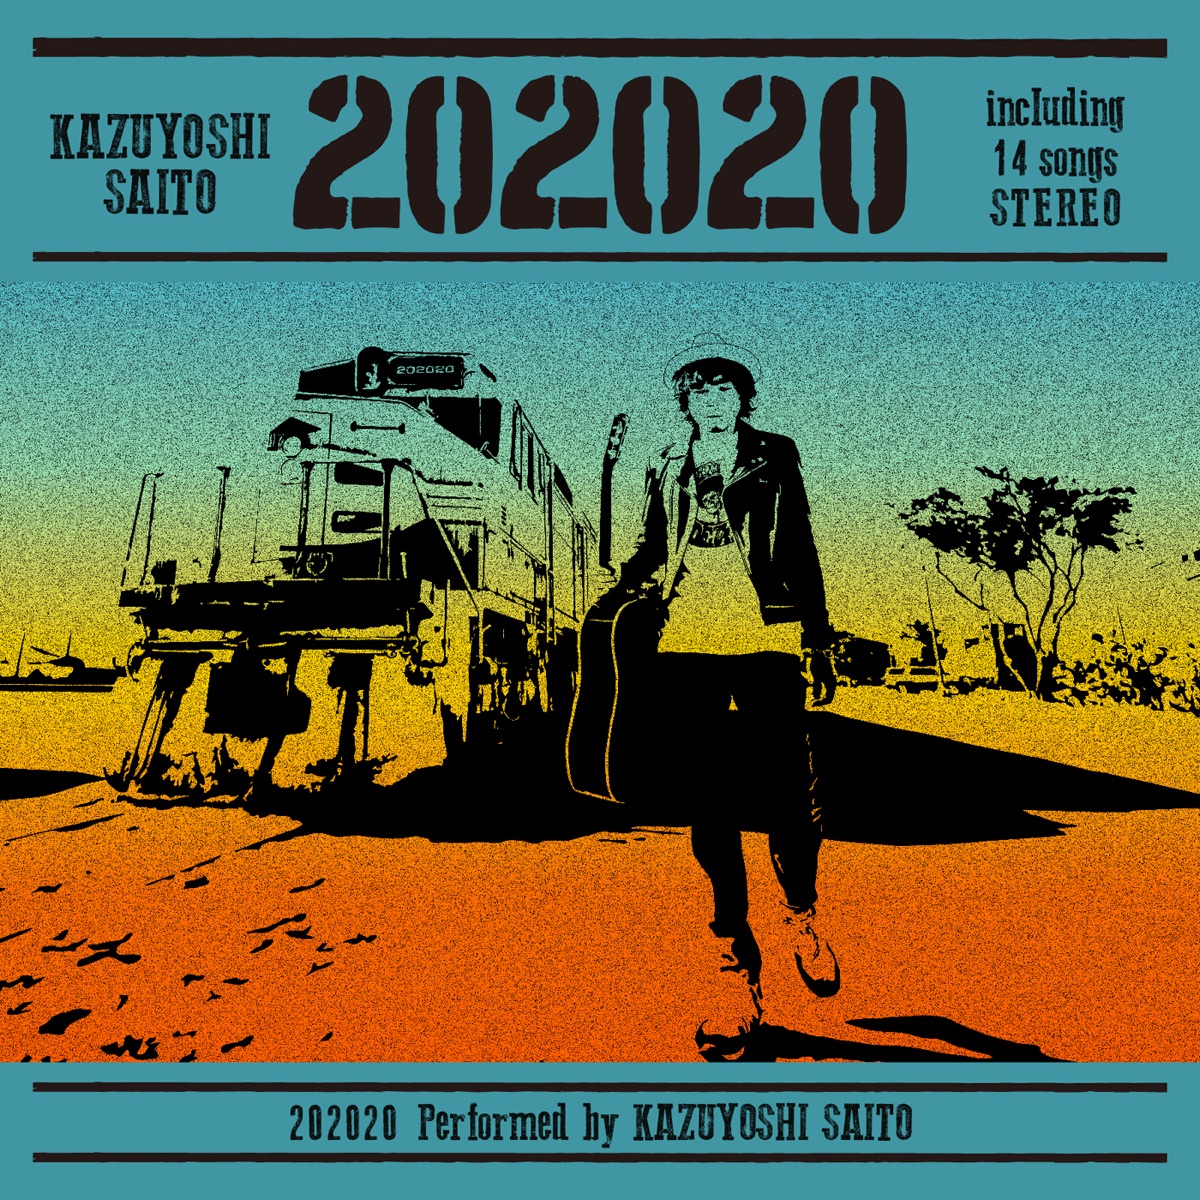 『斉藤和義 - キャンティのうた 歌詞』収録の『202020』ジャケット